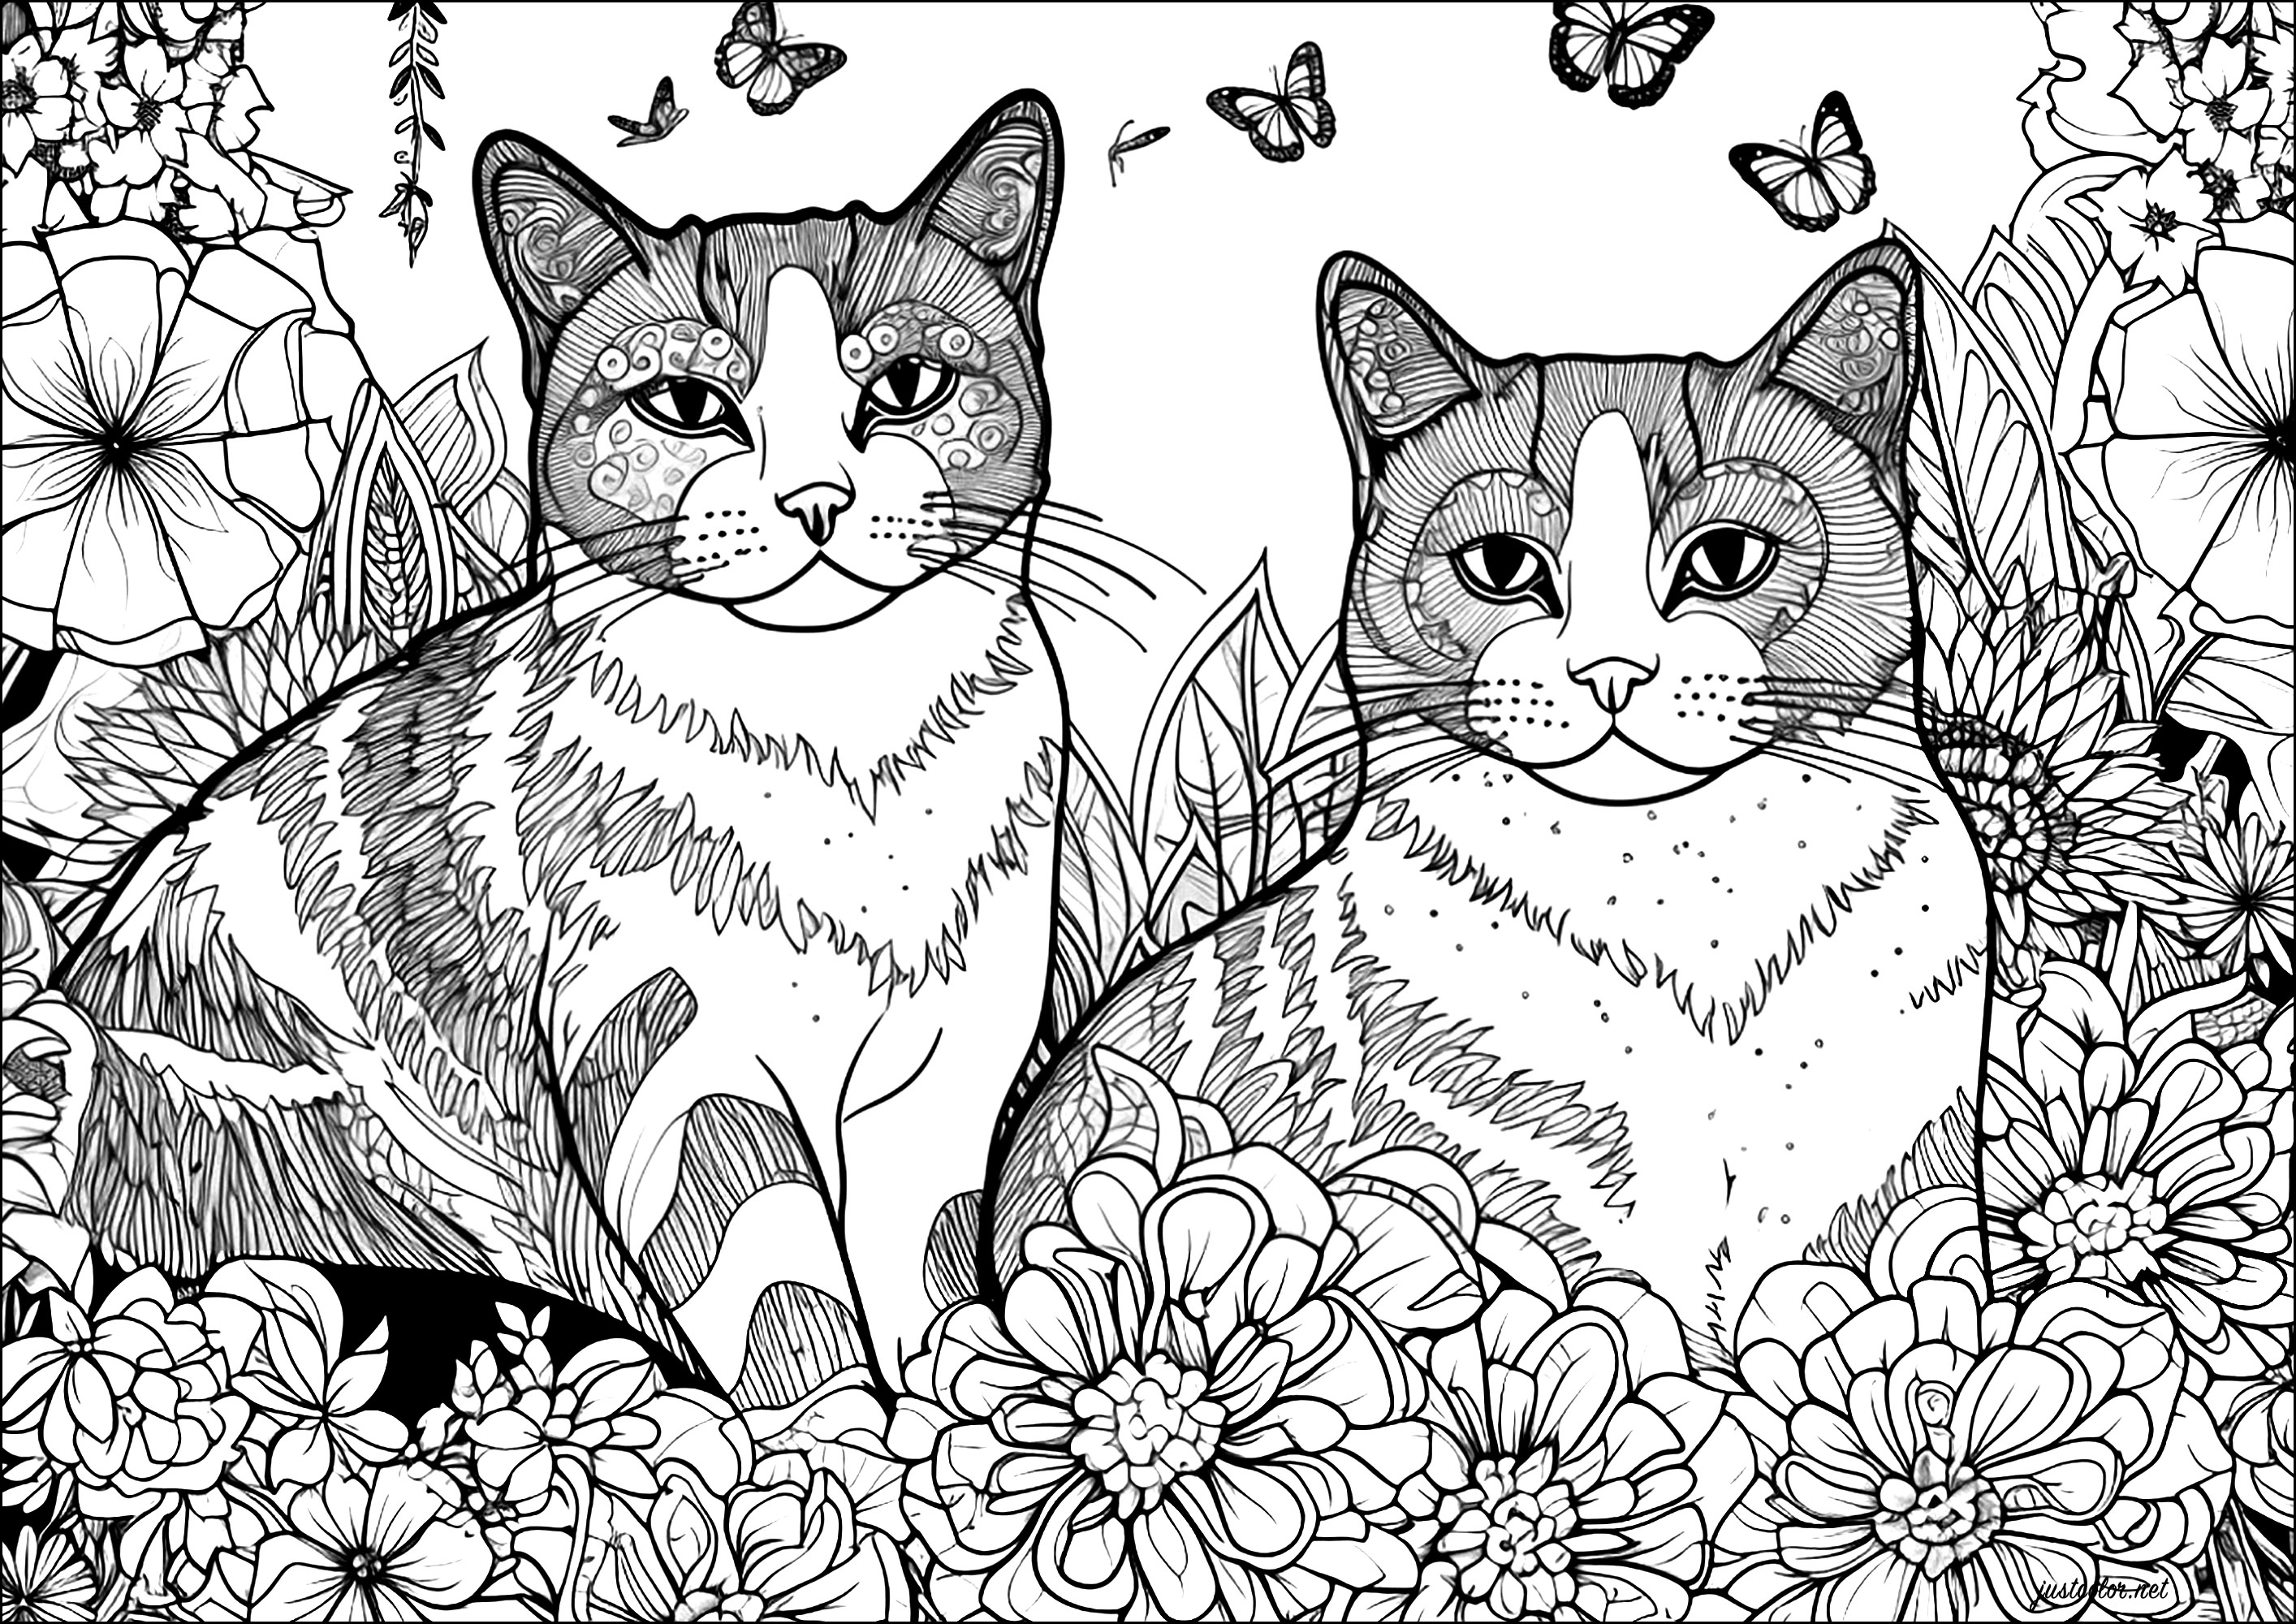 Zwei Katzen mit Blumen und Schmetterlingen. Ein komplexes Design voller schöner Details